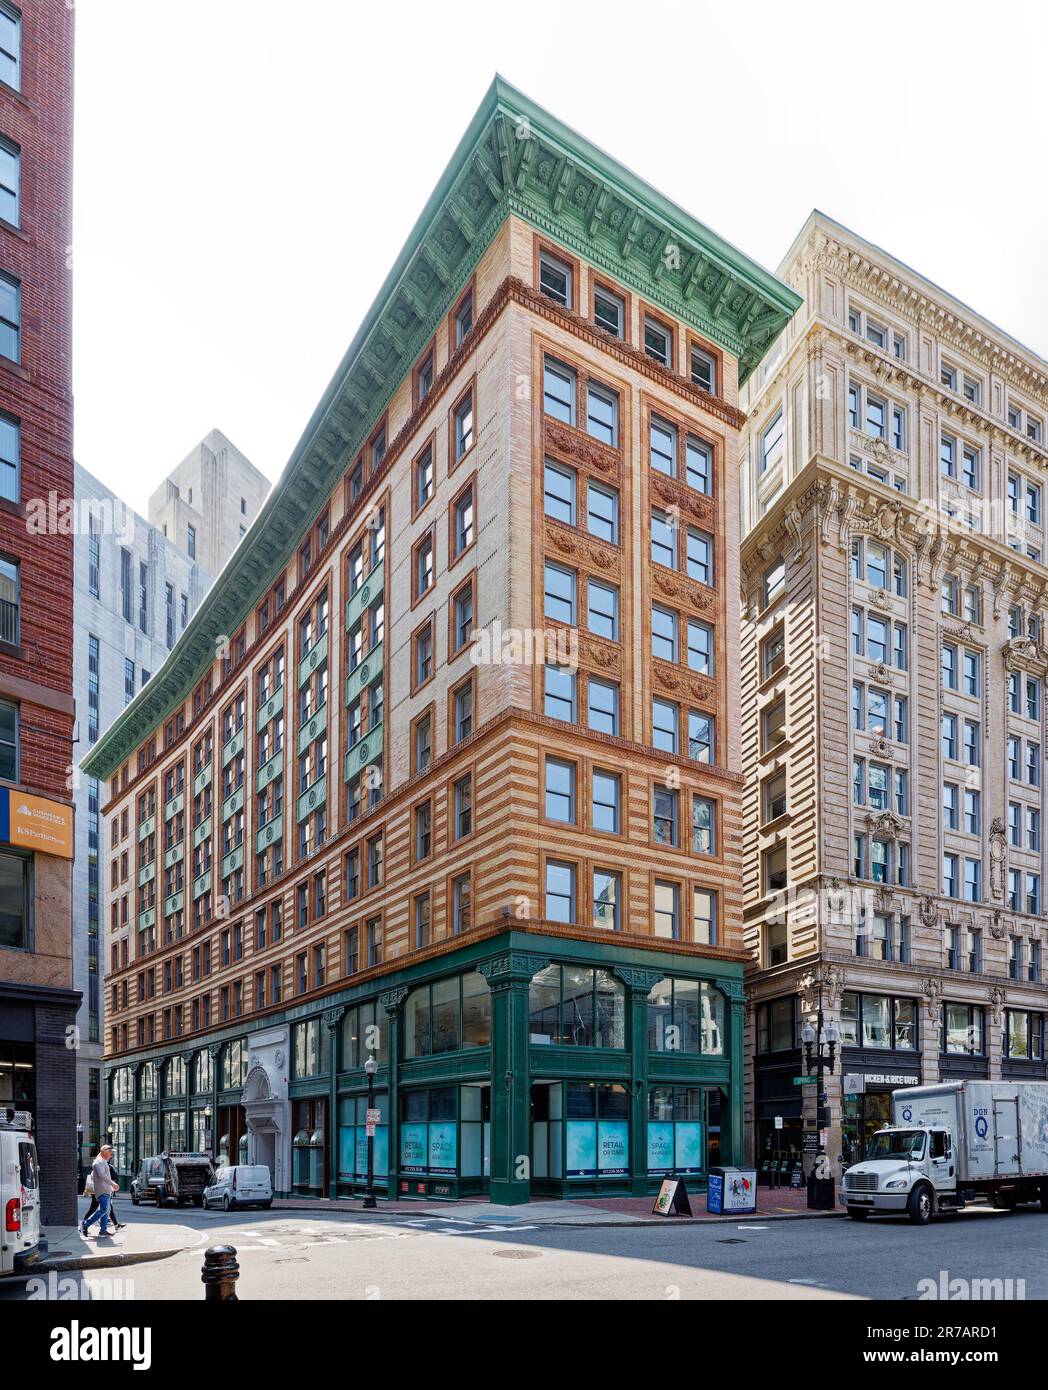 Le 7 Water Street, alias Winthrop Building, a été le premier bâtiment en acier de Boston. Il est recouvert de briques et de terre cuite au-dessus d'une base en fonte de deux étages. Banque D'Images